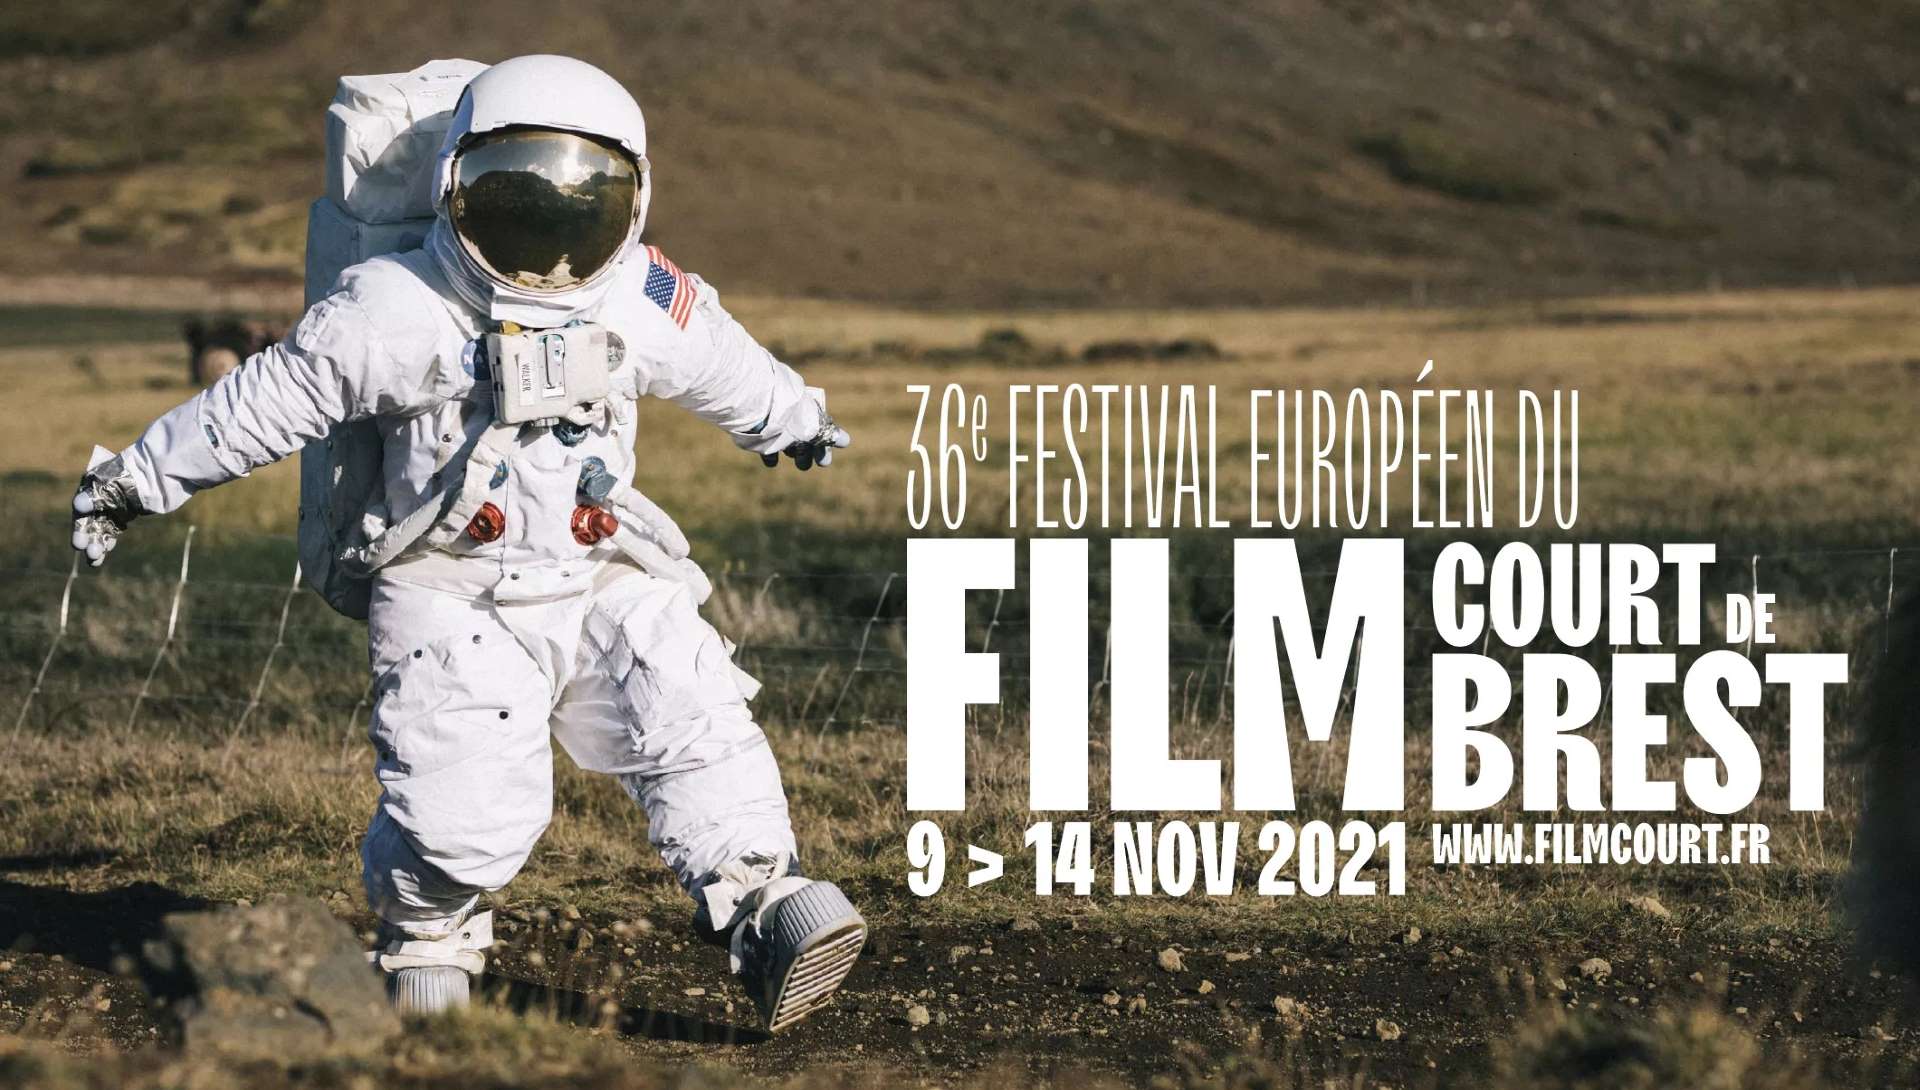 La première journée du festival proposera plusieurs courts métrages sur le thème de l'espace.